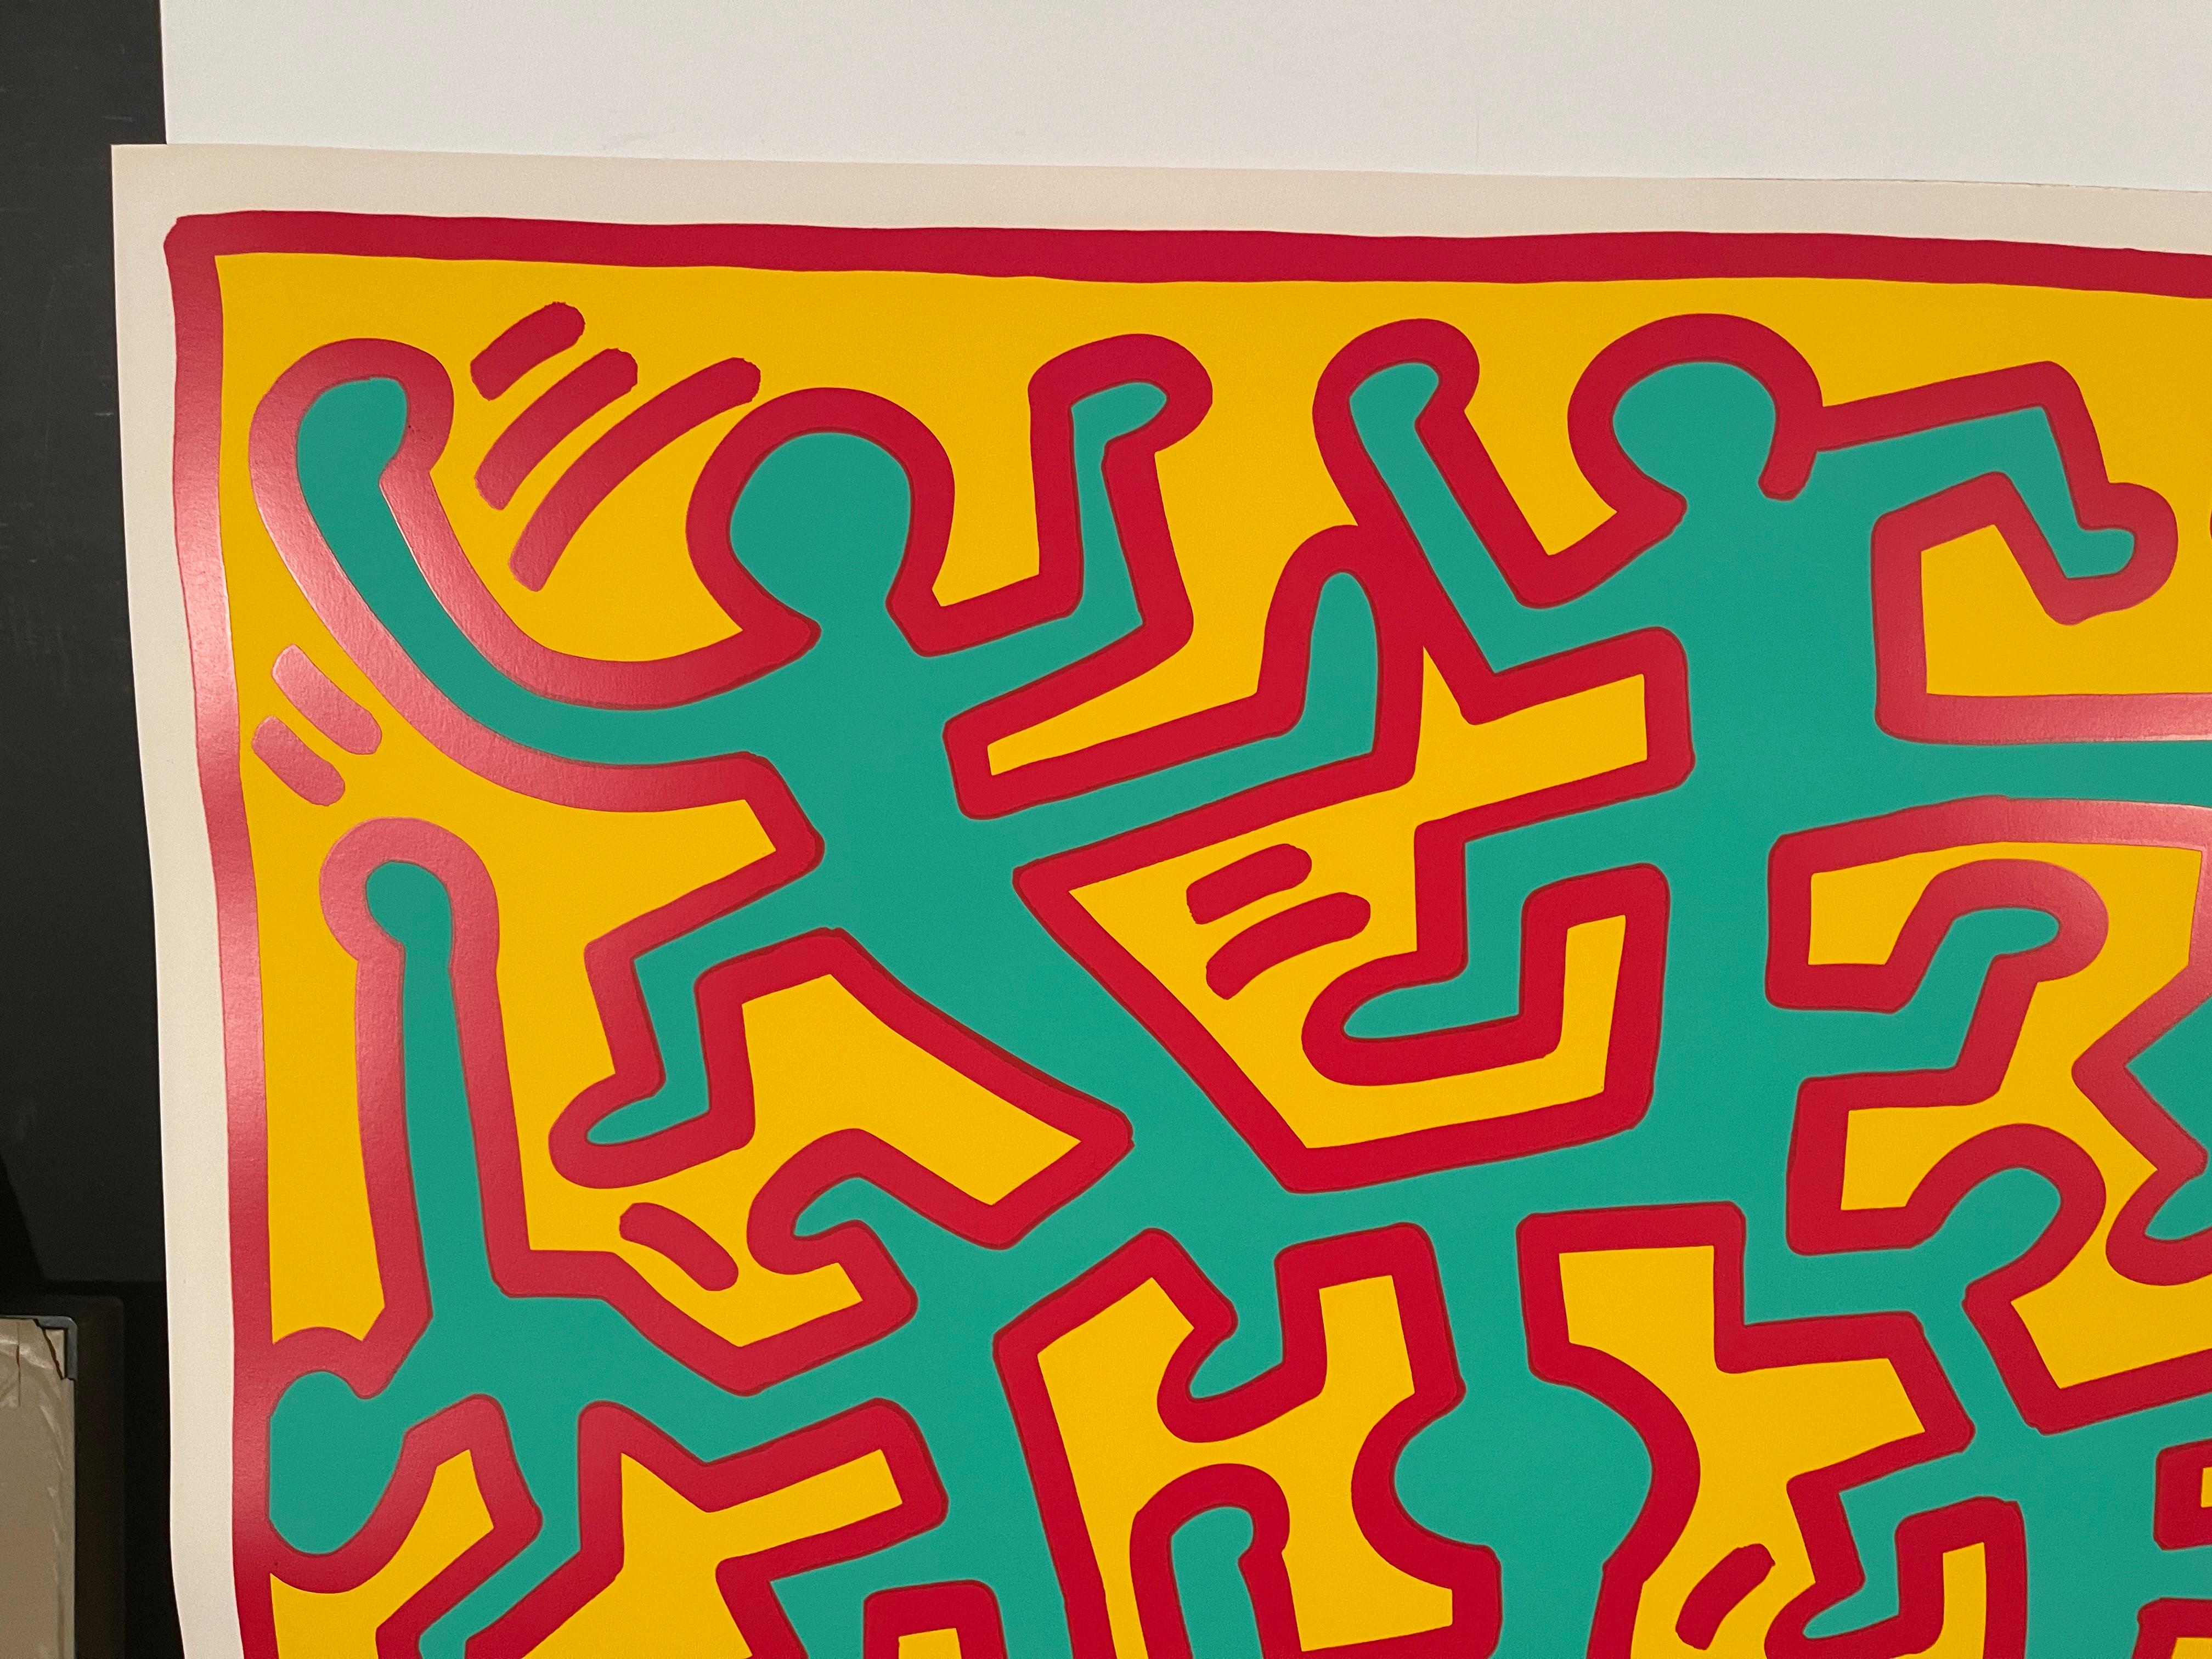 Croissance 2, 1988 - Orange Portrait Print par Keith Haring